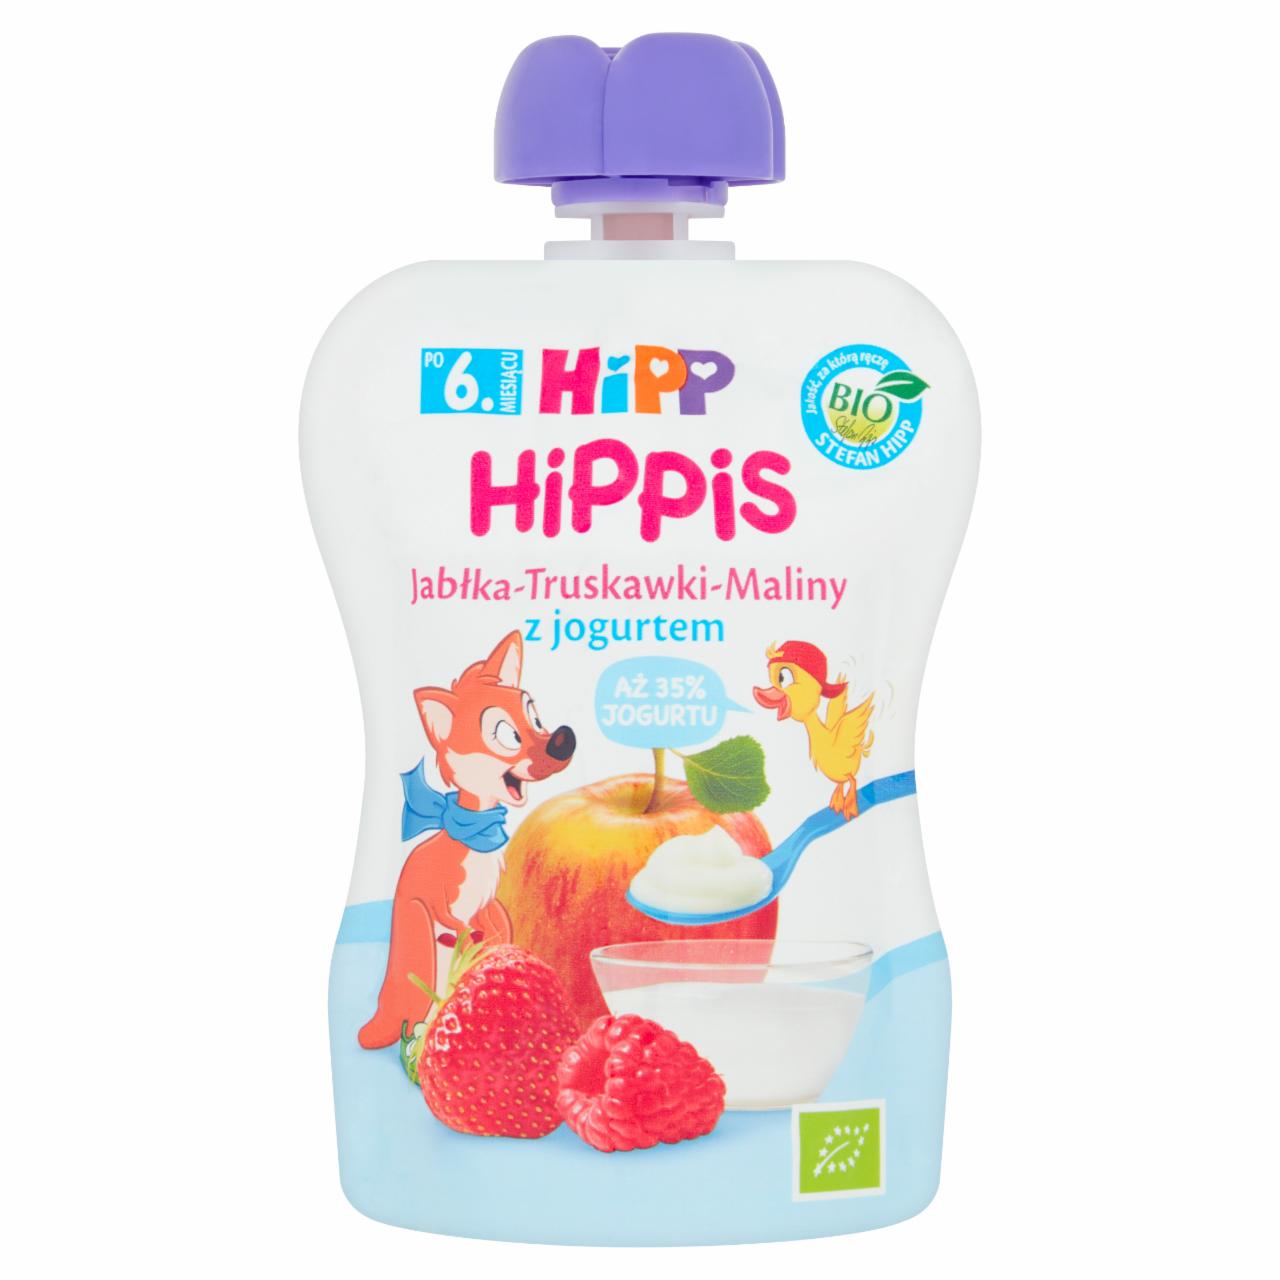 Zdjęcia - HiPP BIO HiPPiS Mus owocowy po 6. miesiącu jabłka-truskawki-maliny z jogurtem 90 g